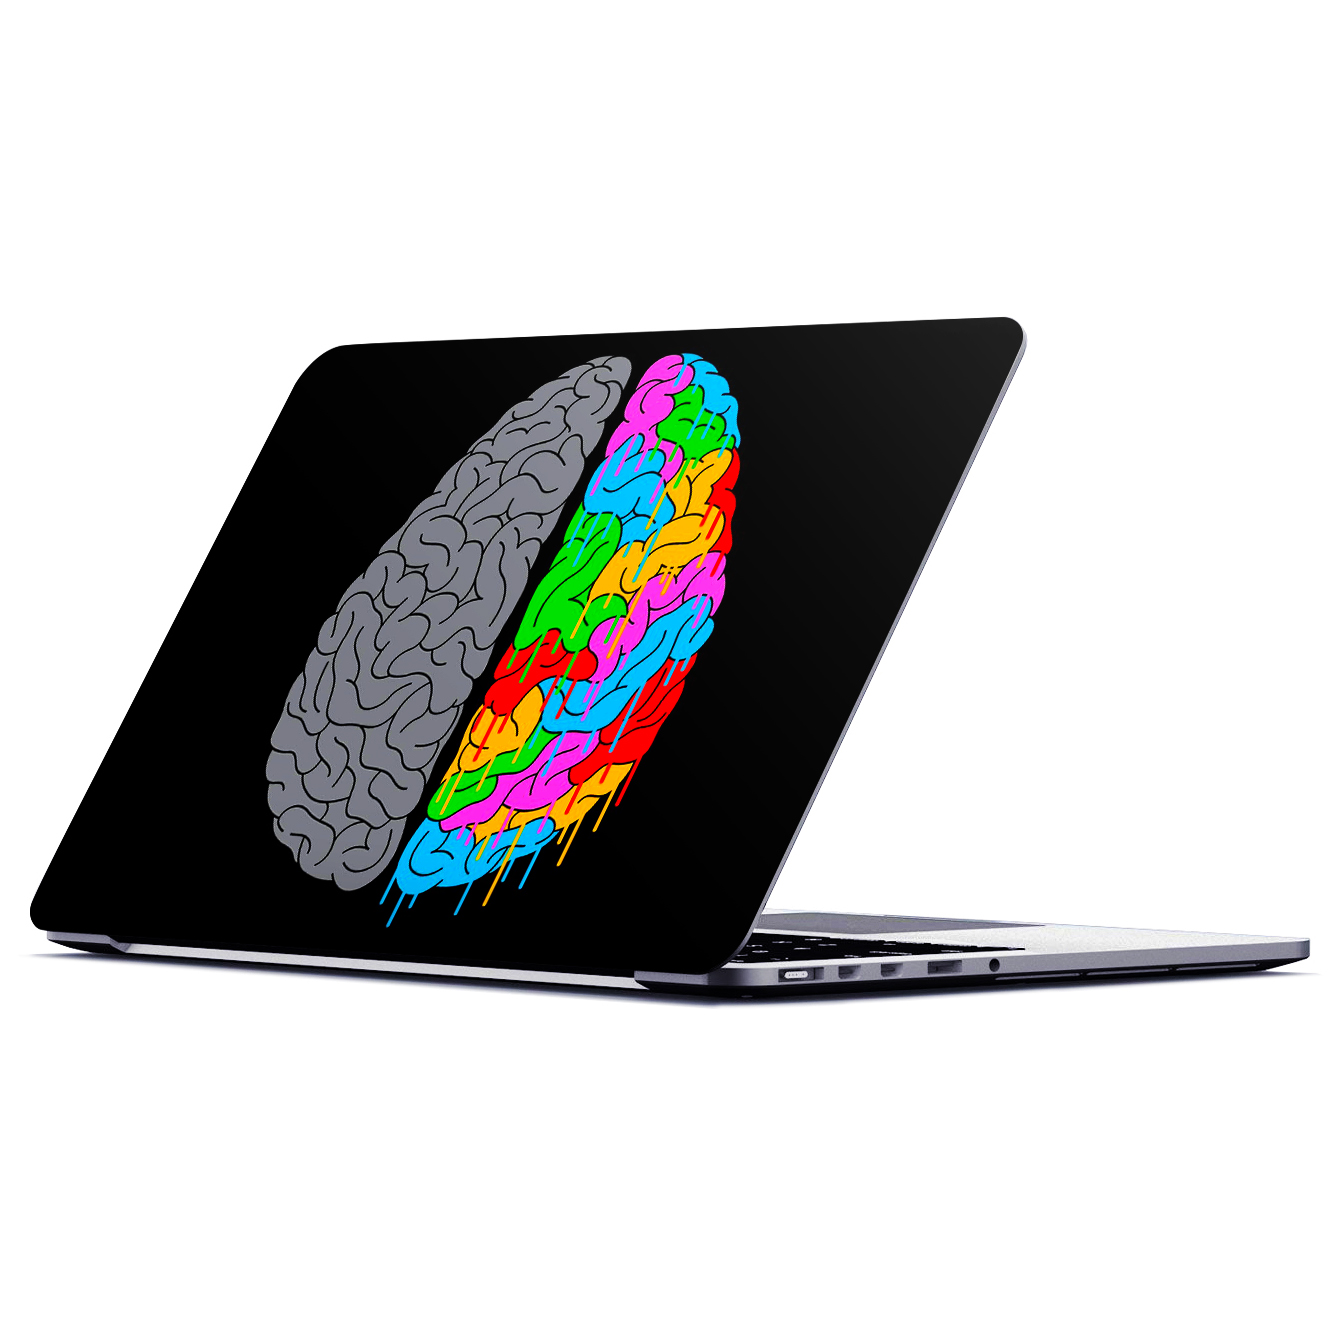 استیکر لپ تاپ ماسا دیزاین طرح مغز مدل STL0066 مناسب برای لپ تاپ 15.6 اینچ